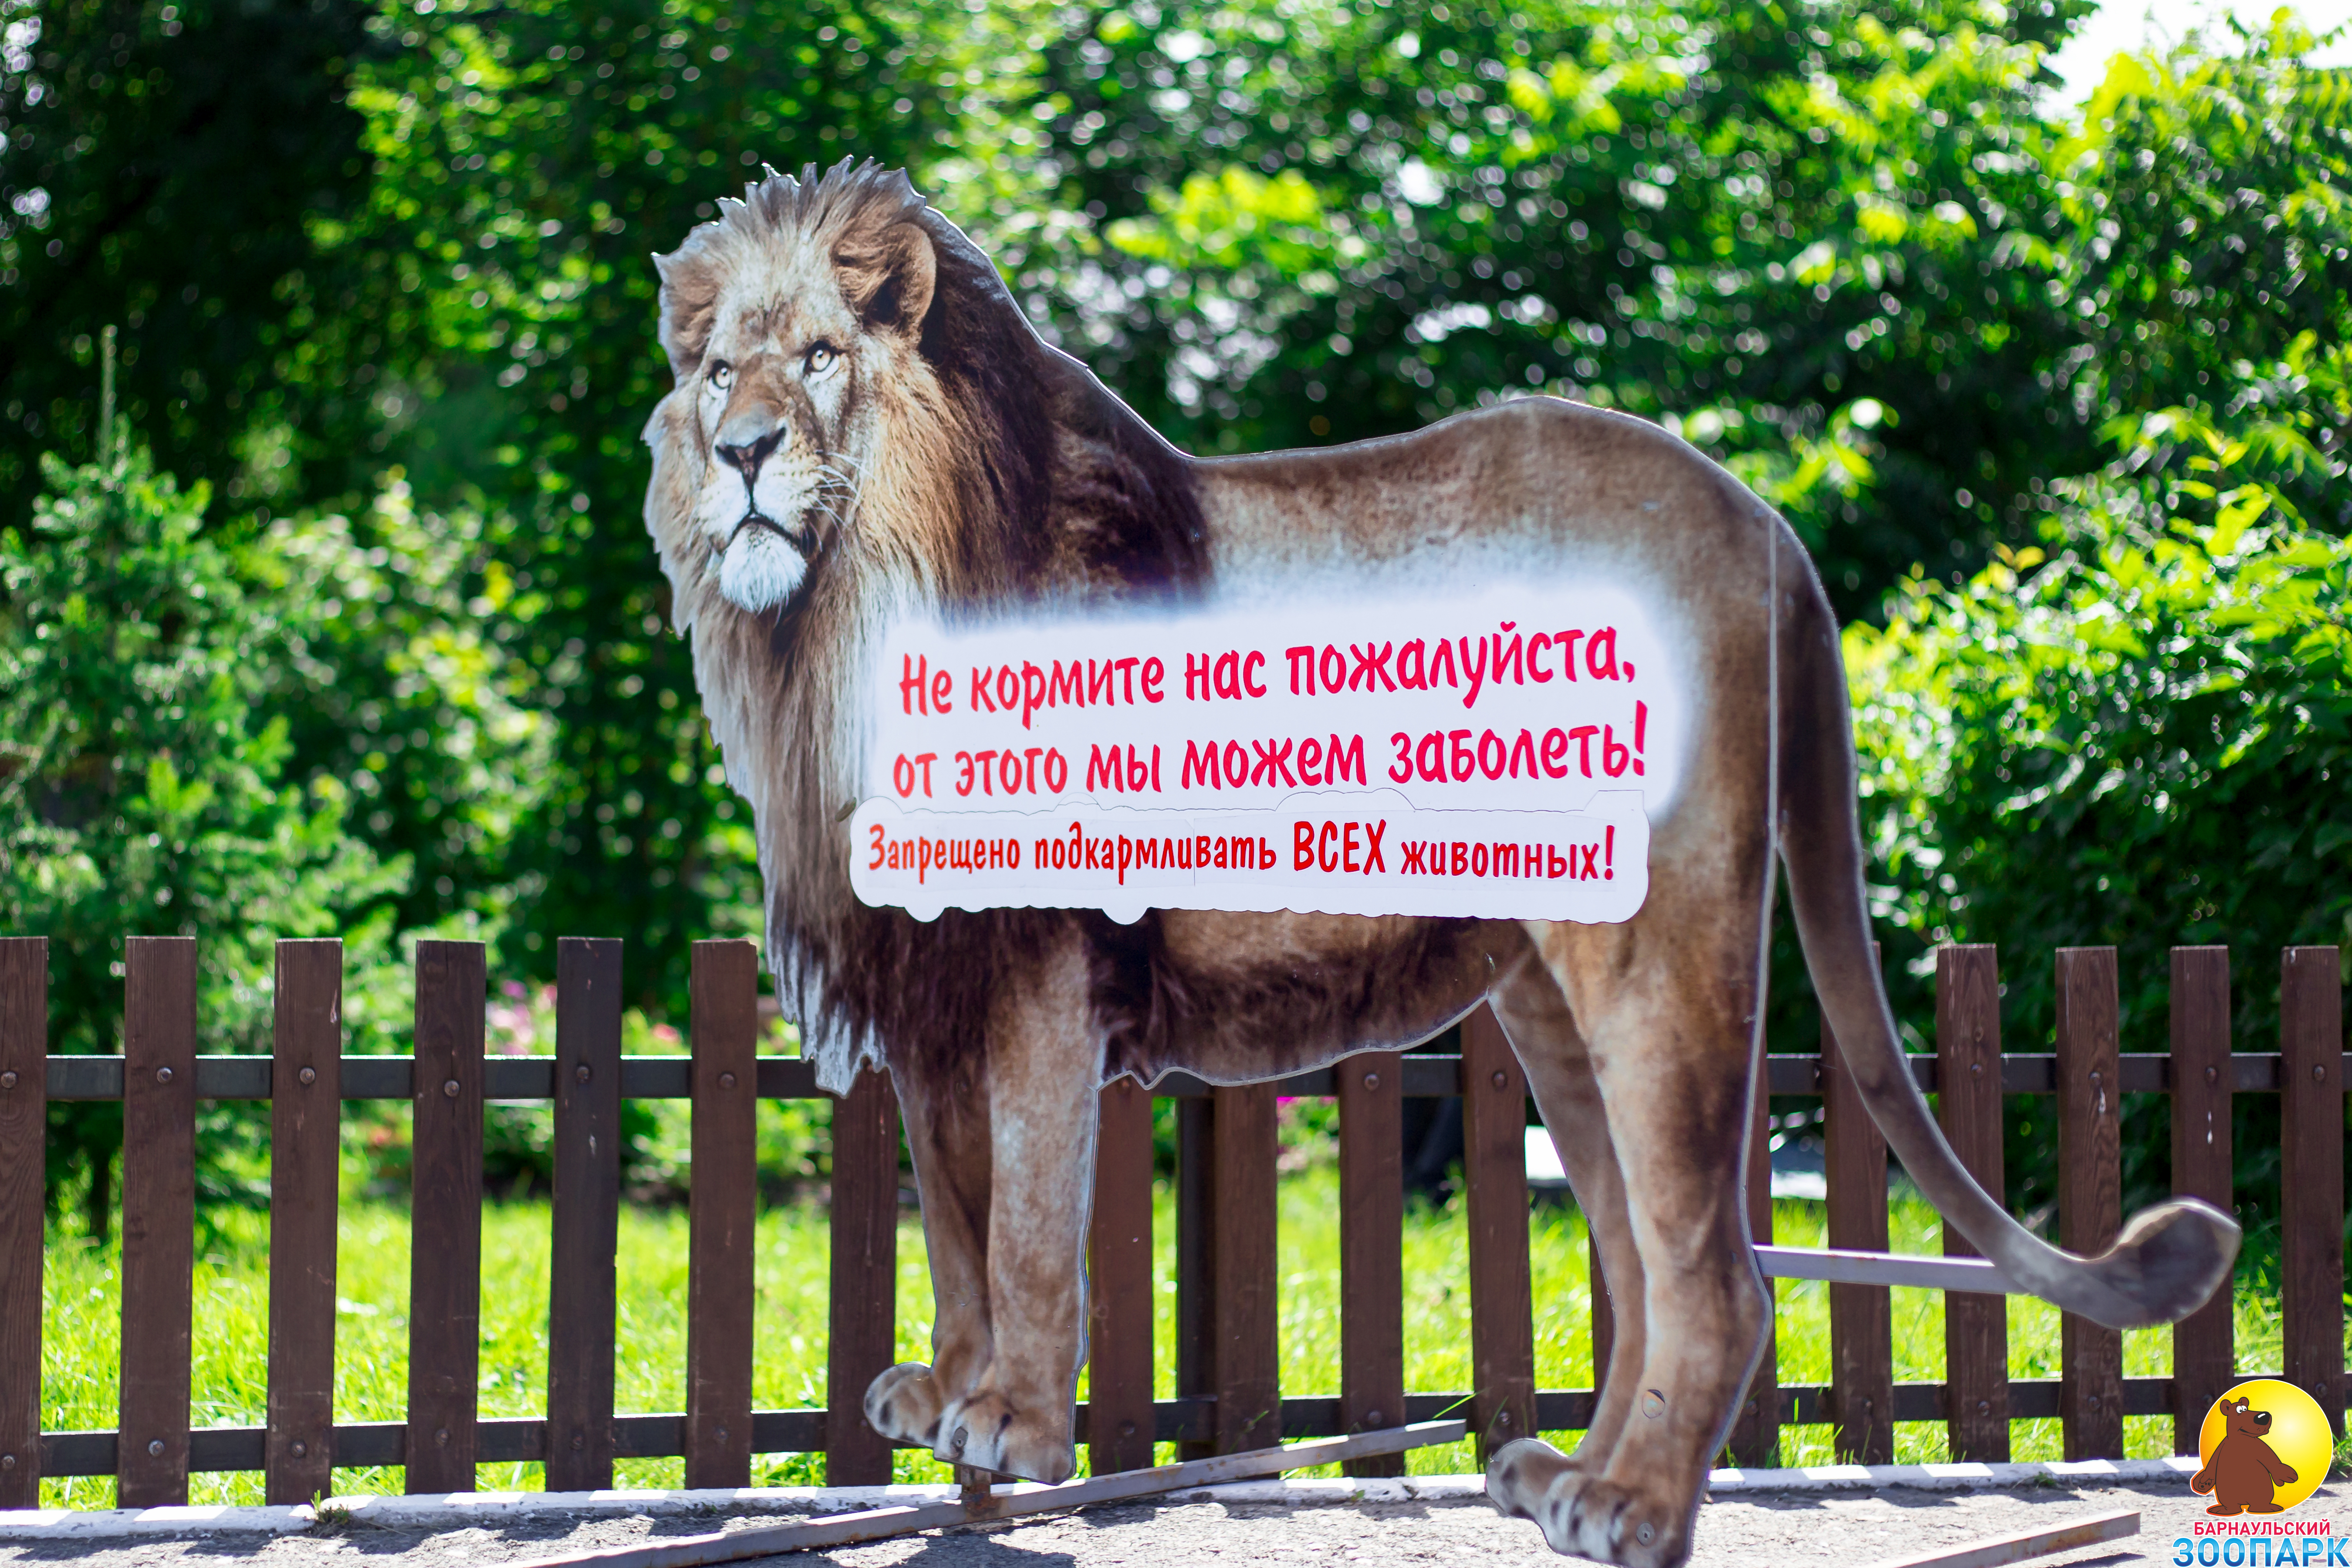 Правила поведения в барнаульском зоопарке